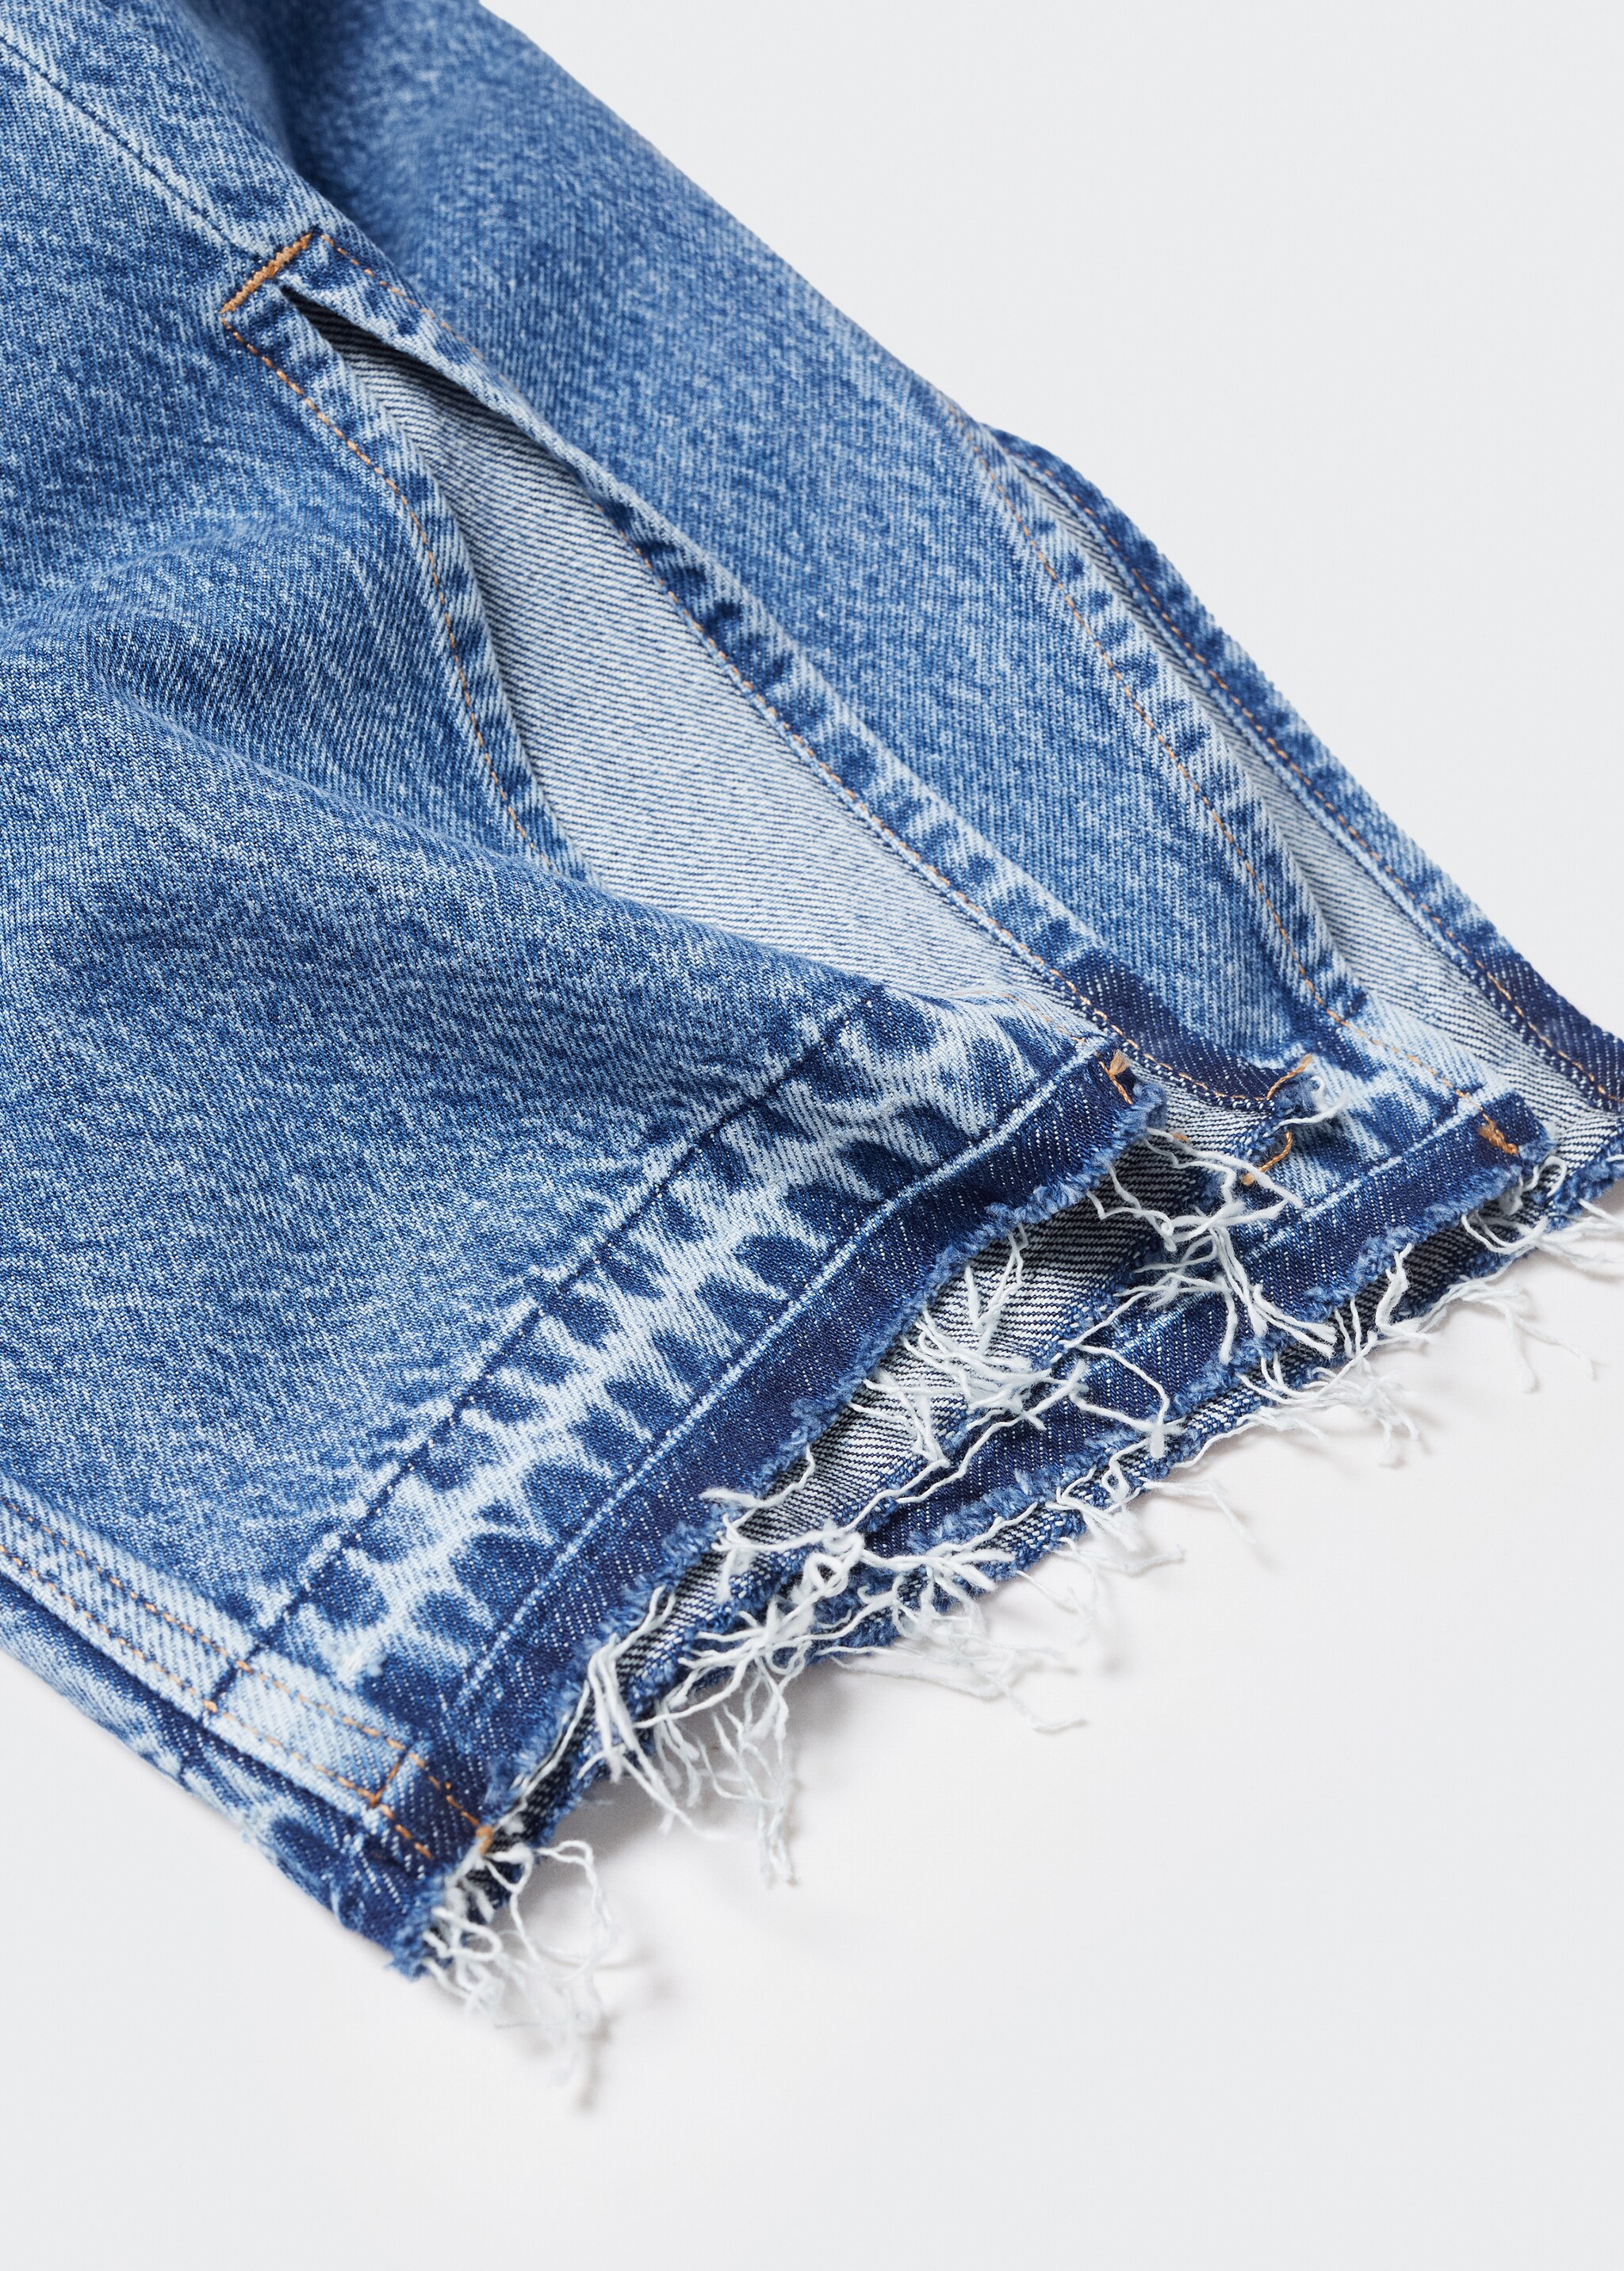 Jeans rectos tiro alto aberturas - Detalle del artículo 8